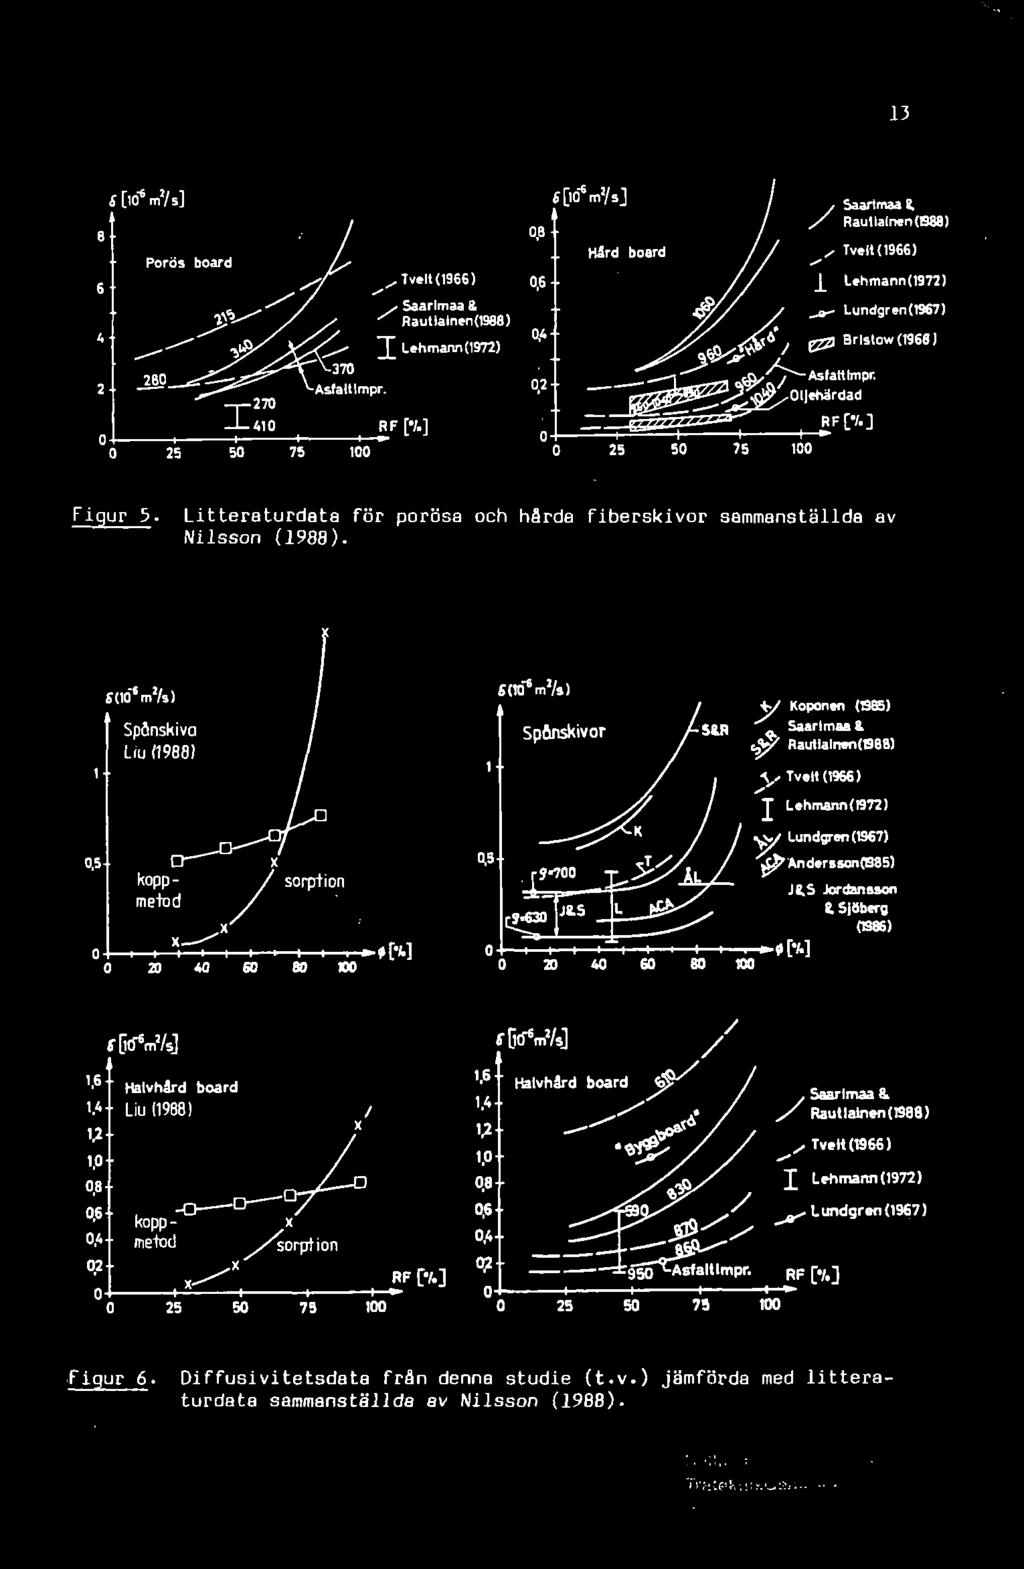 Litteraturdata för porösa och hårda fiberskivor sammanställda av Nilsson (1988).